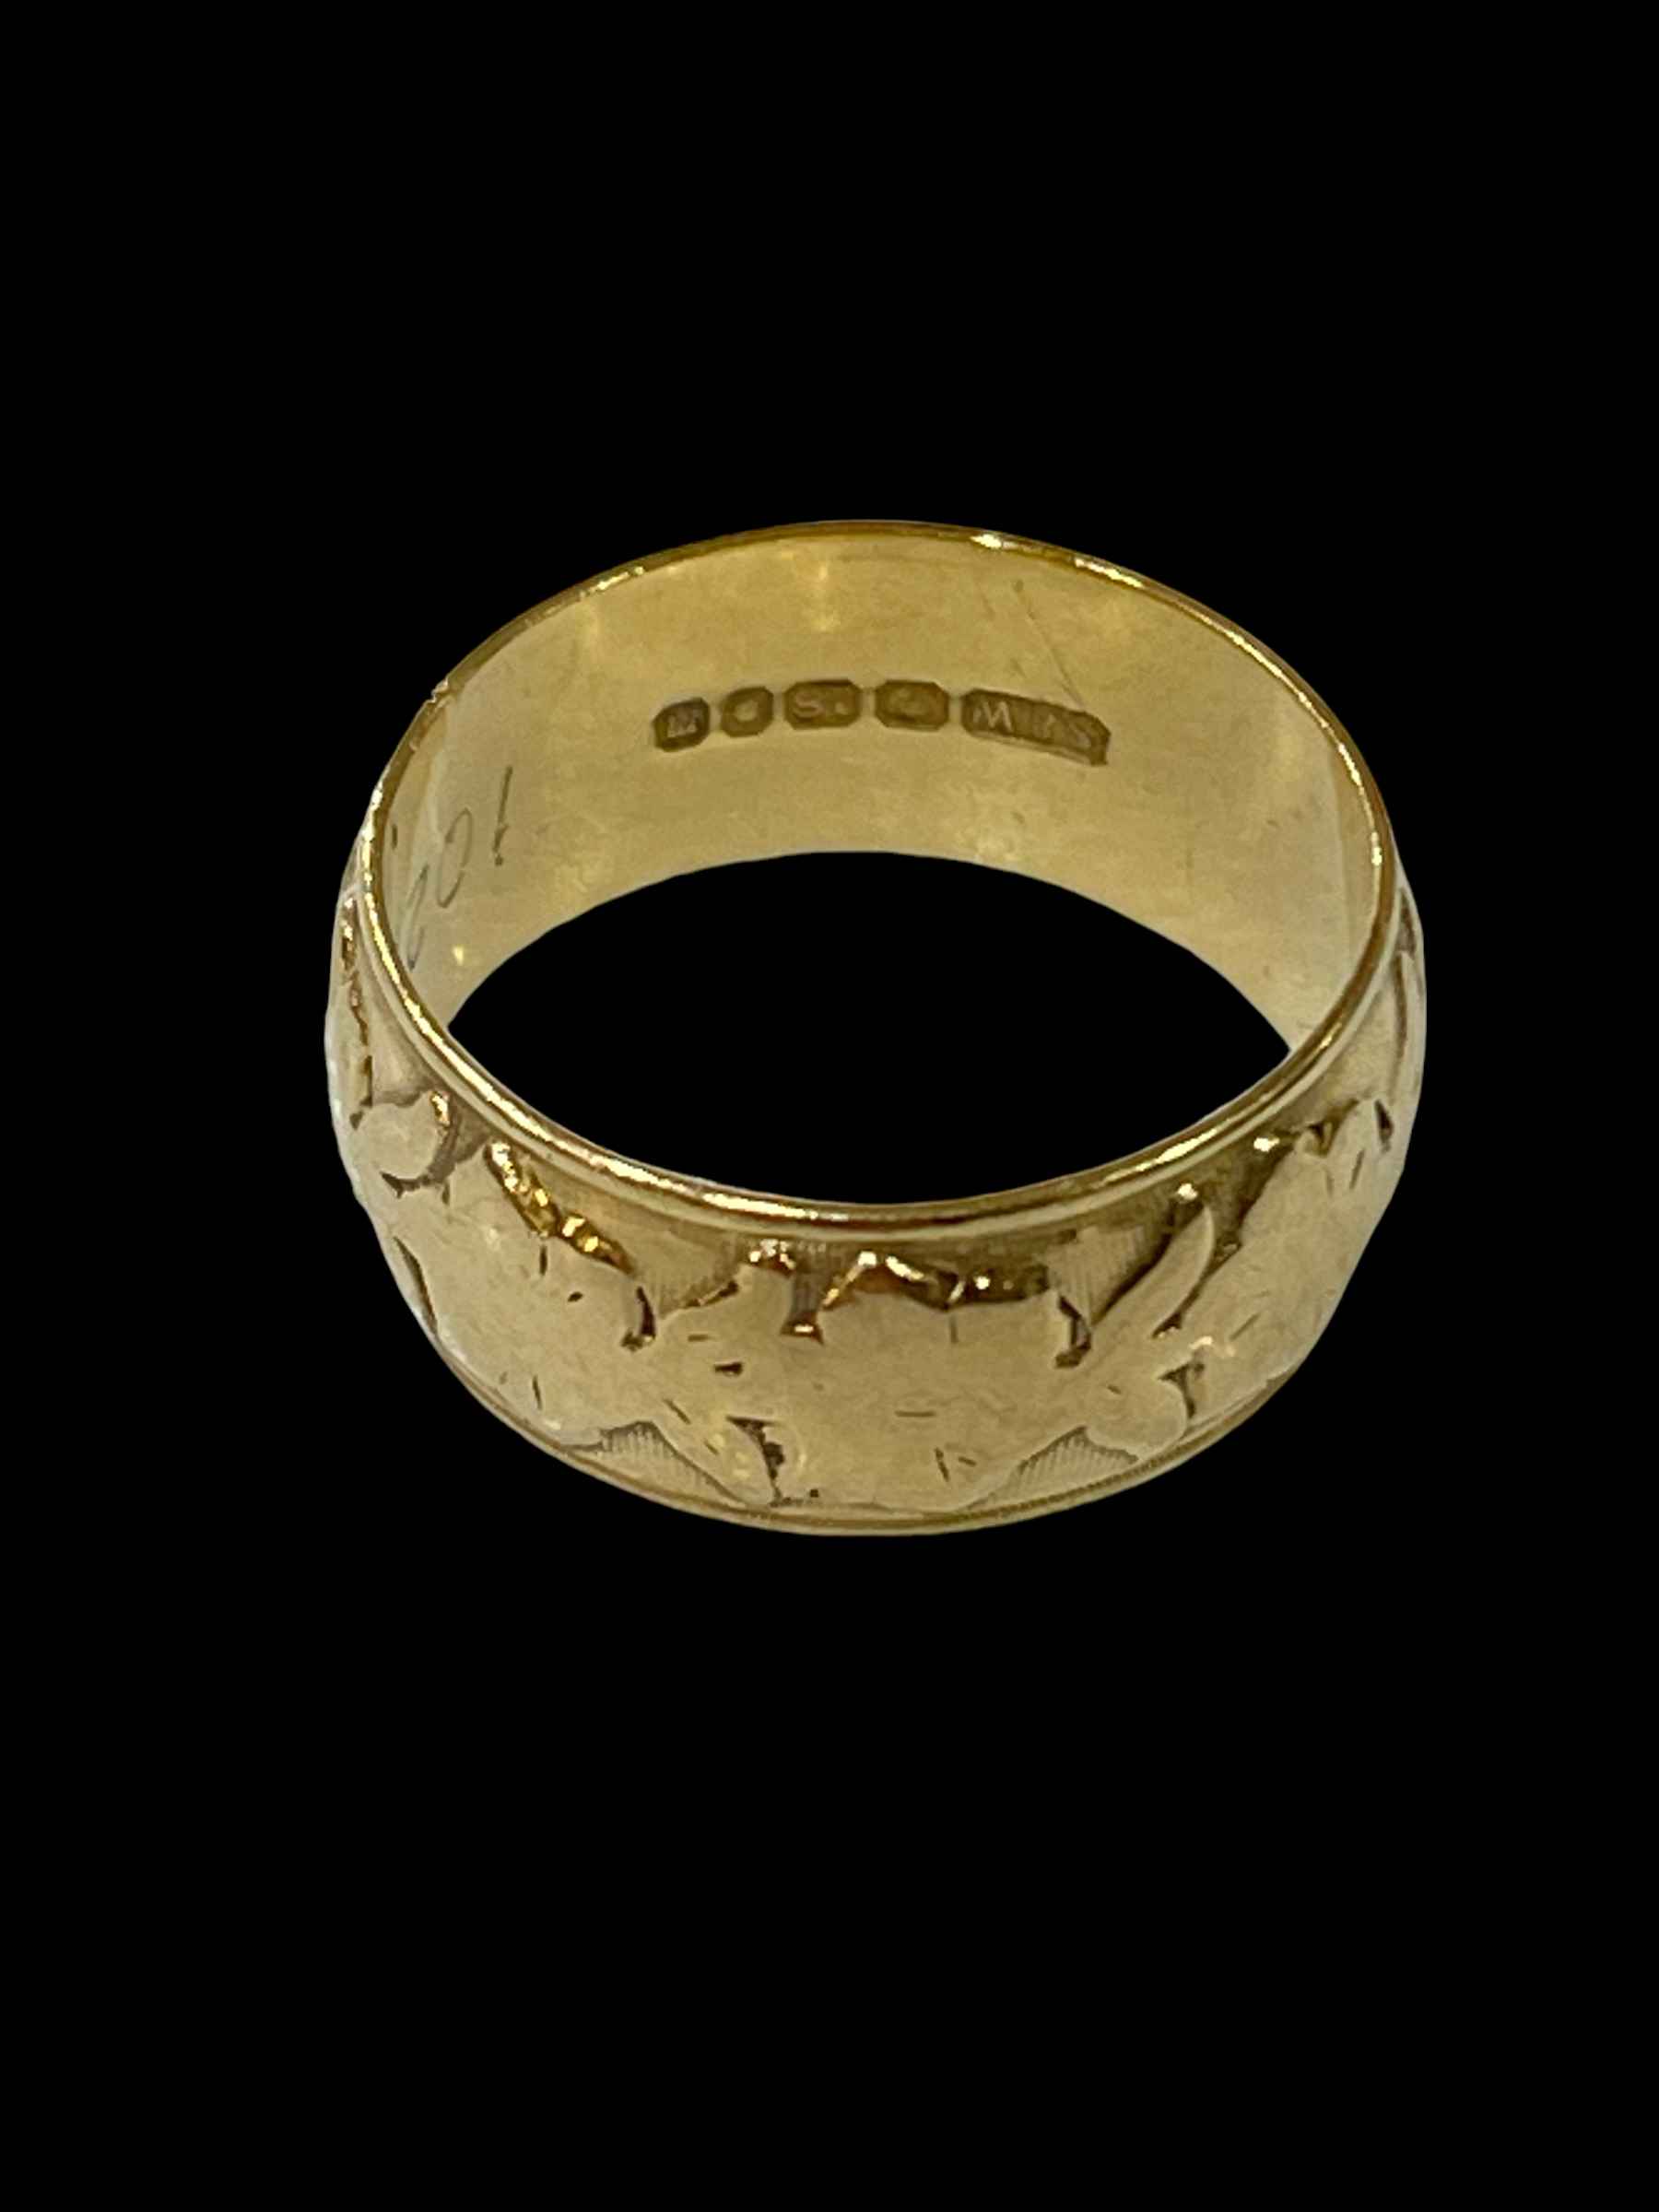 18 carat gold wedding band ring.